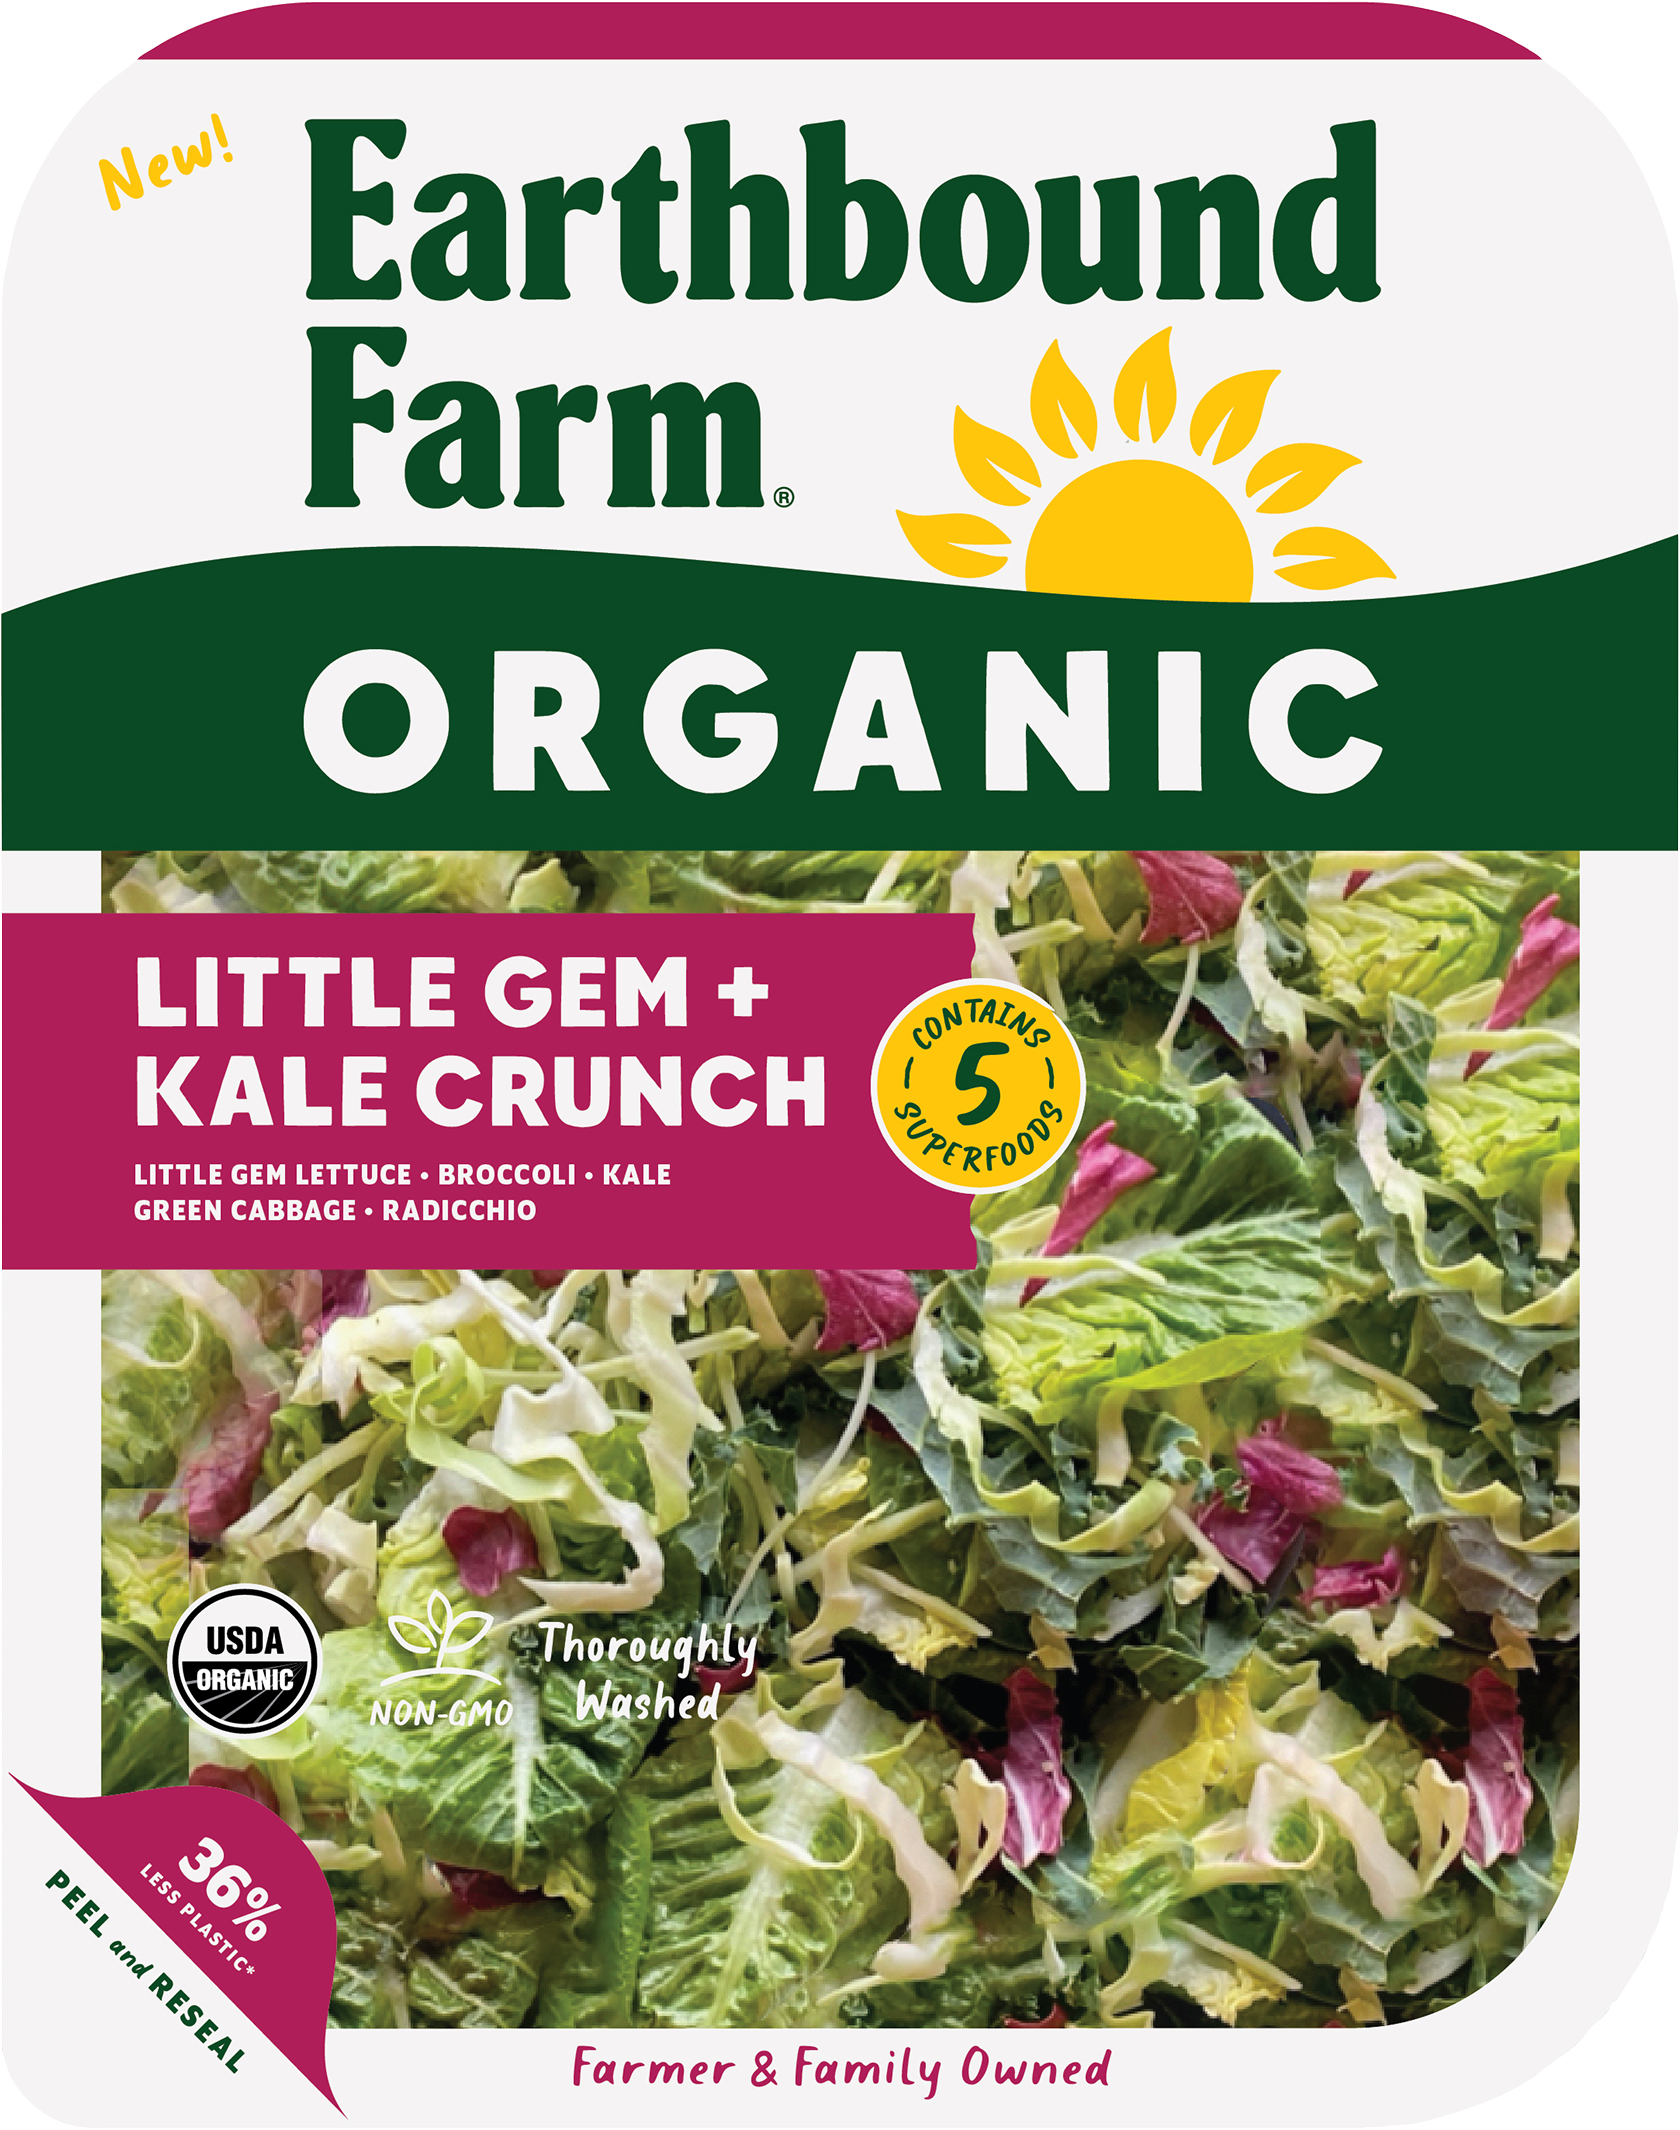 Little Gem + Kale Crunch